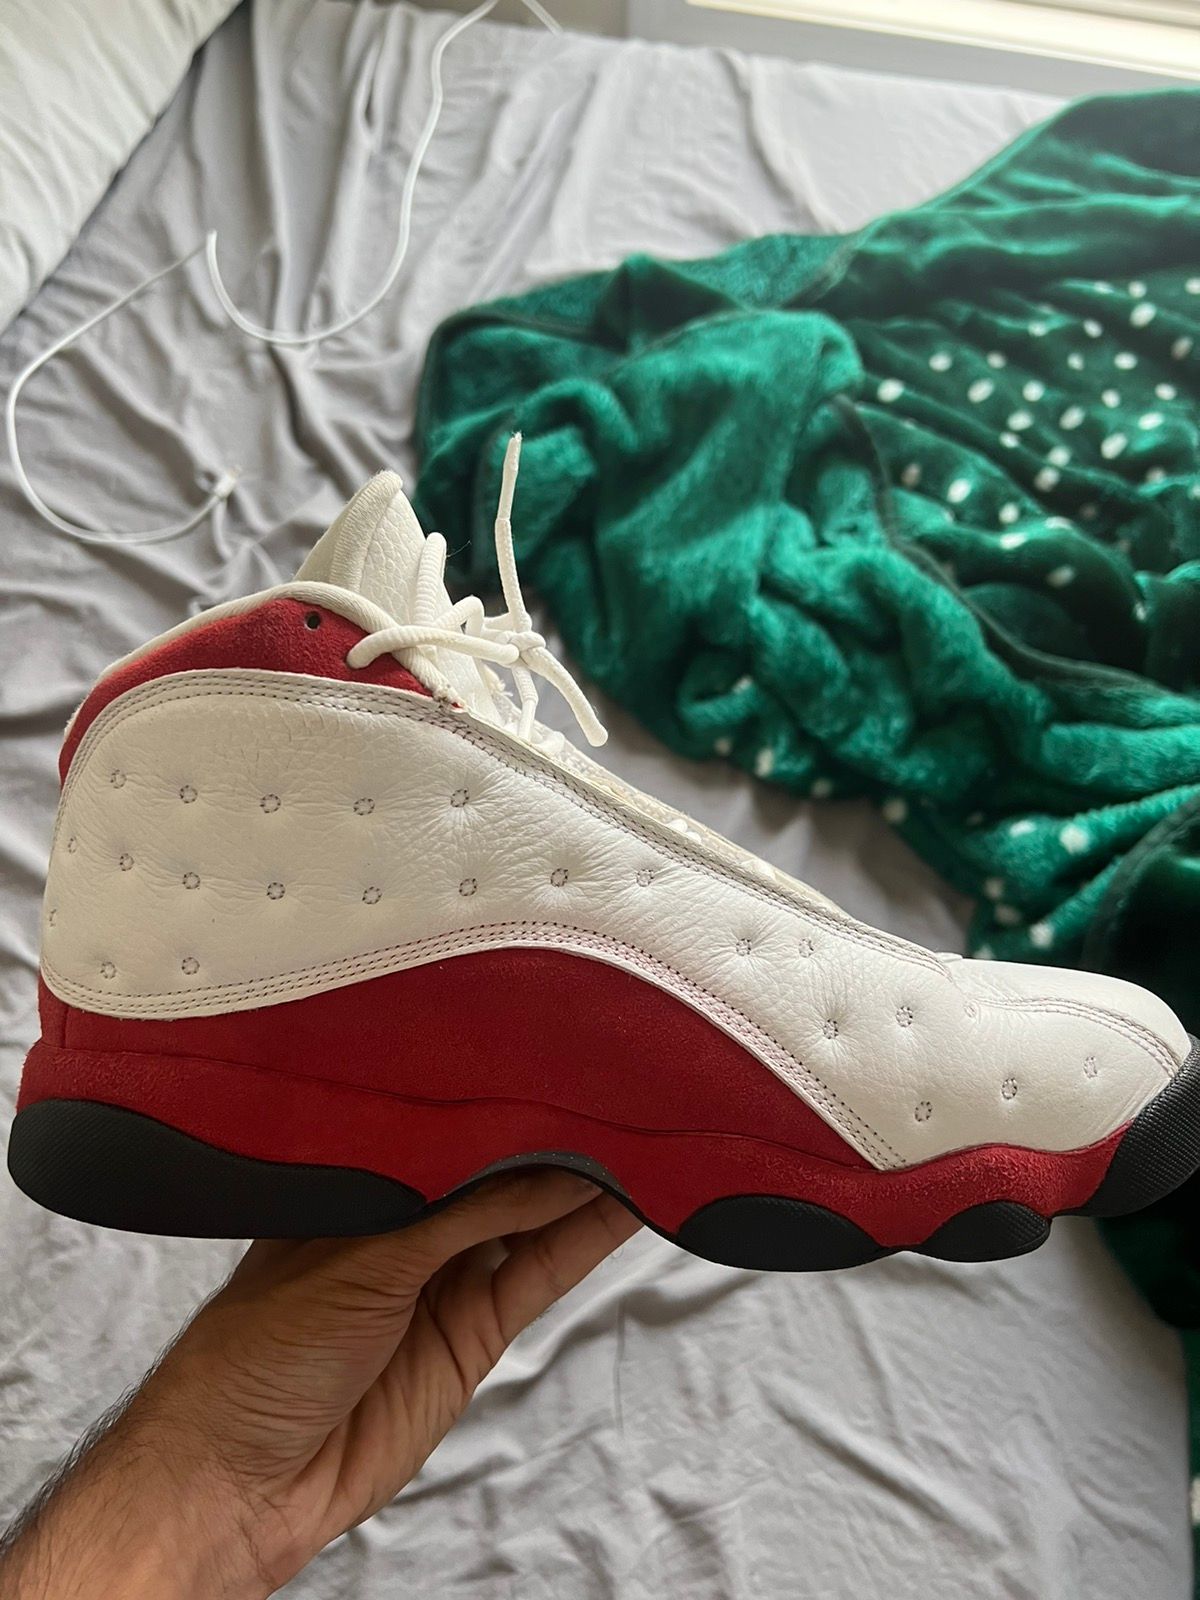 Nike Jordan 13 Retro Cherry (2010) Size US 9 / EU 42 - 5 Thumbnail